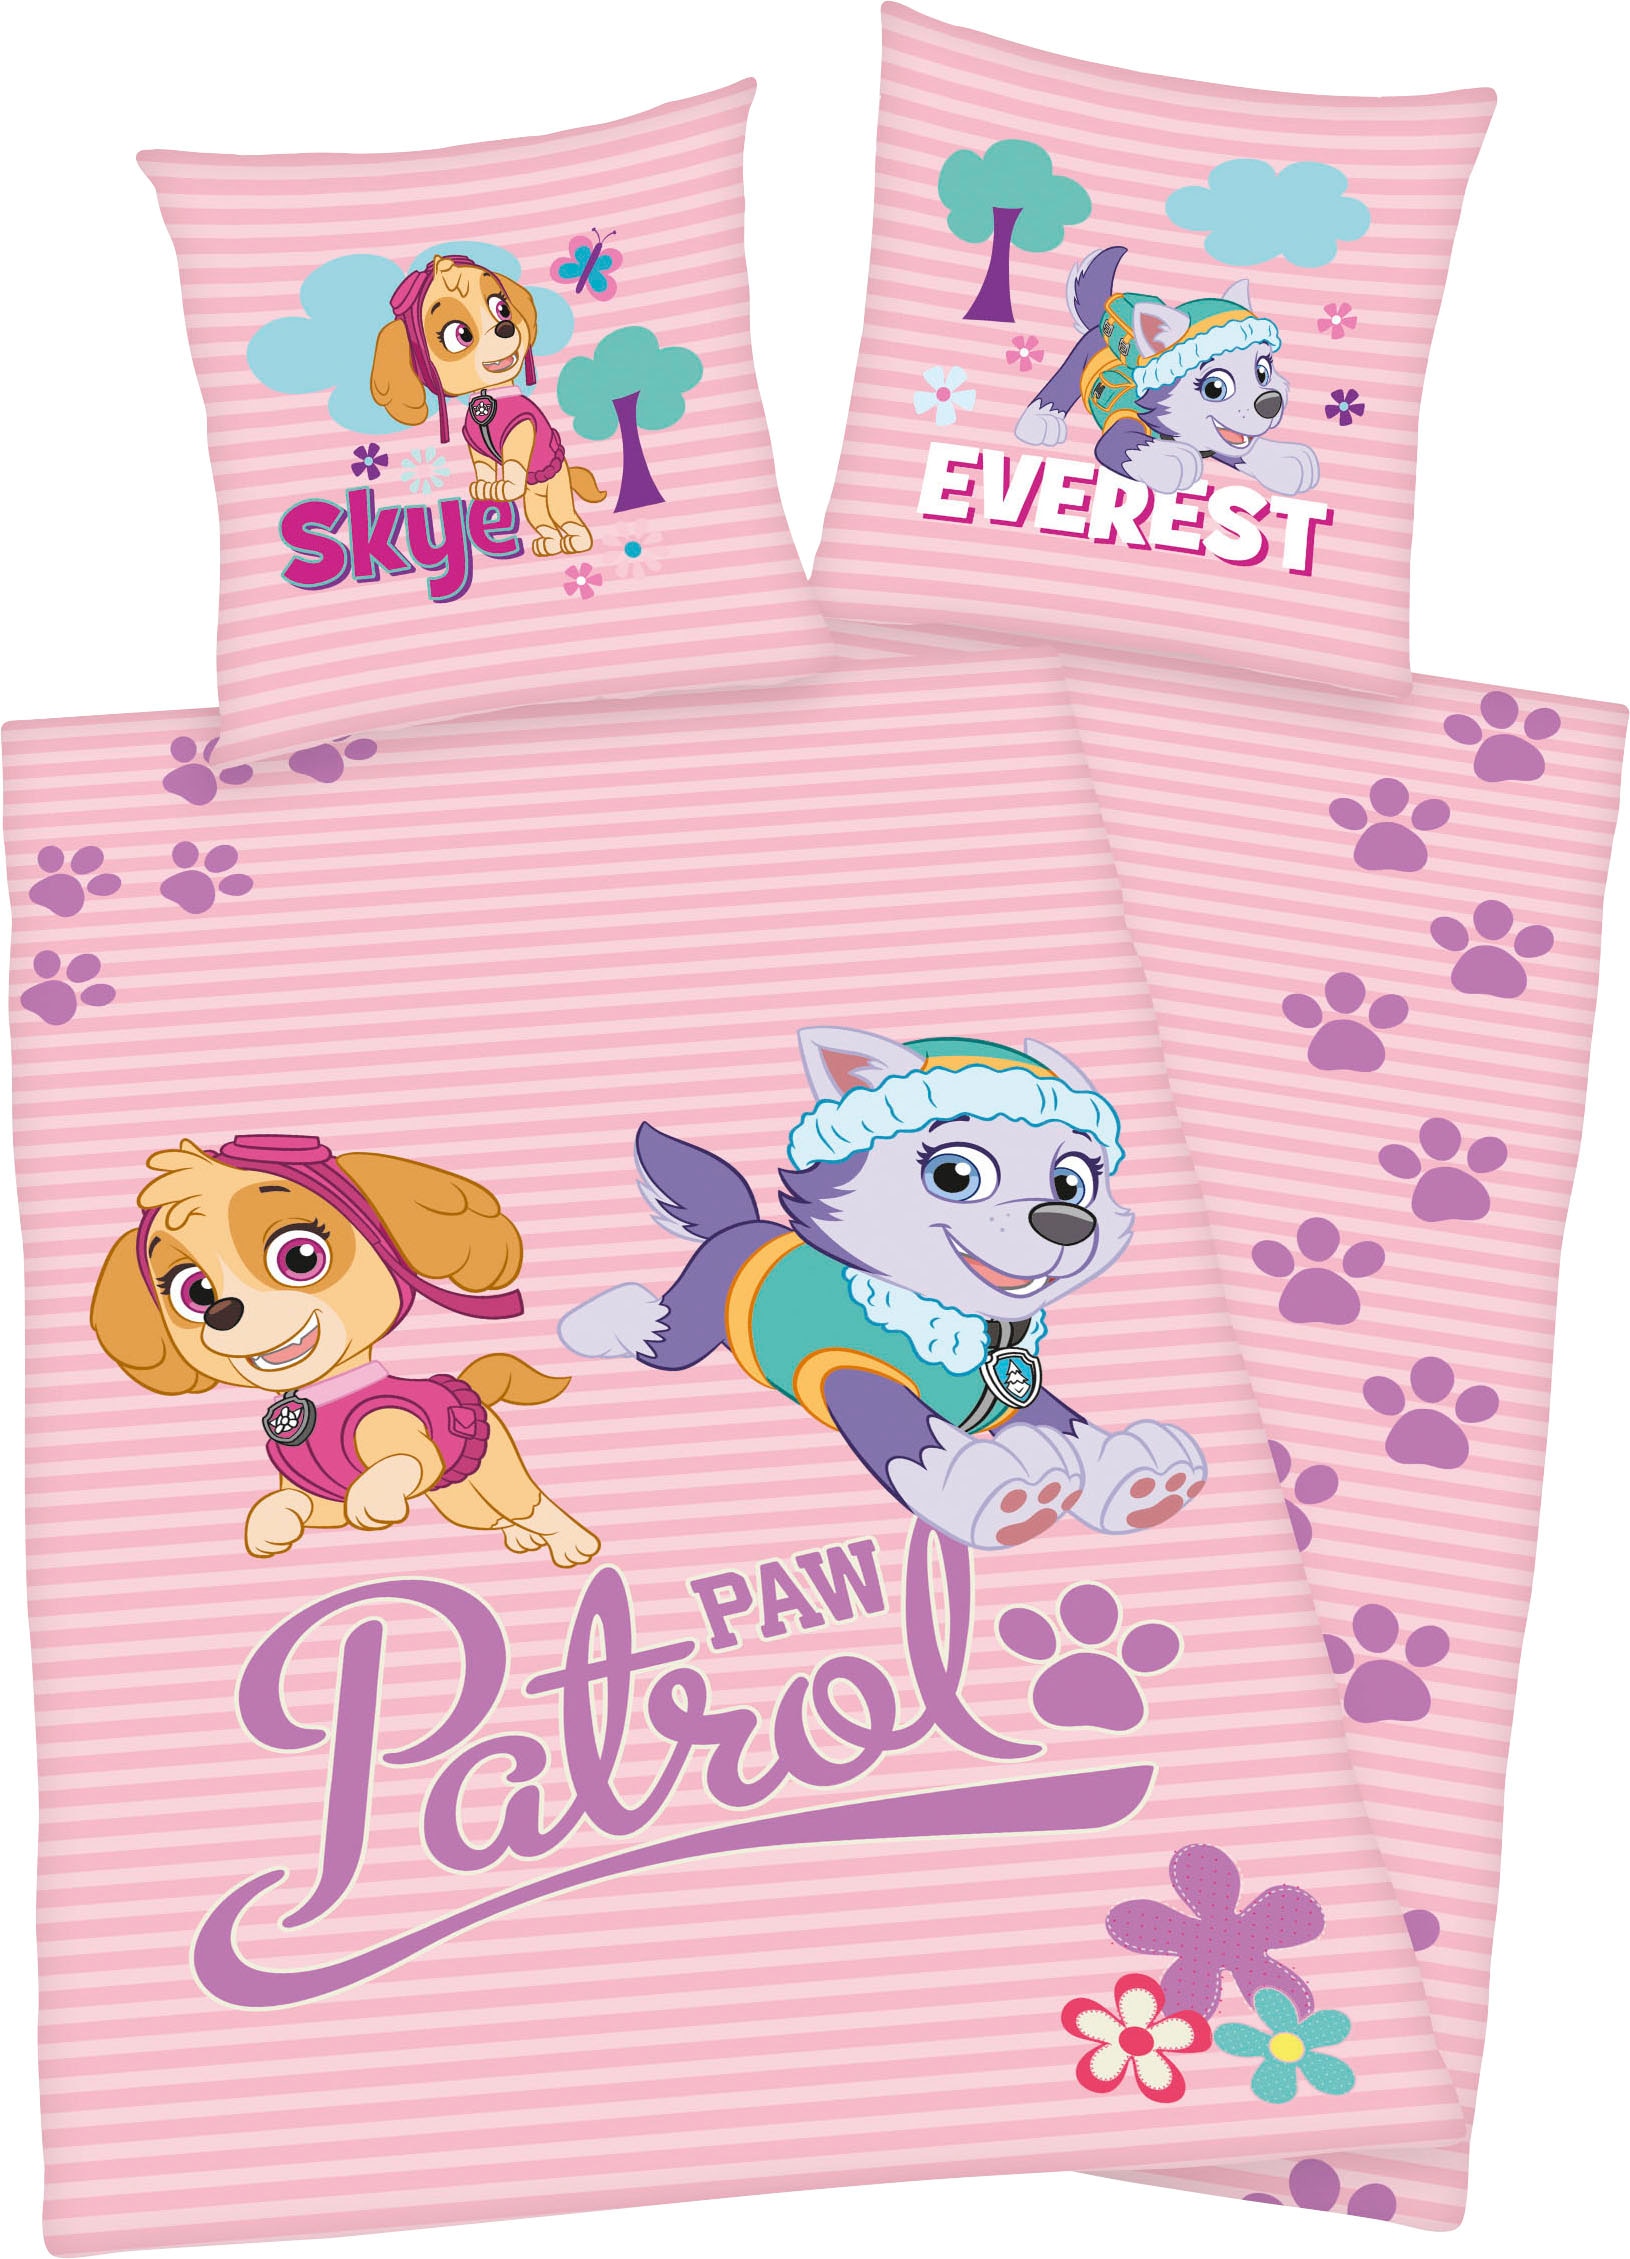 PAW PATROL Kinderbettwäsche »Skye und Everest«, mit tollem Paw Patrol Motiv